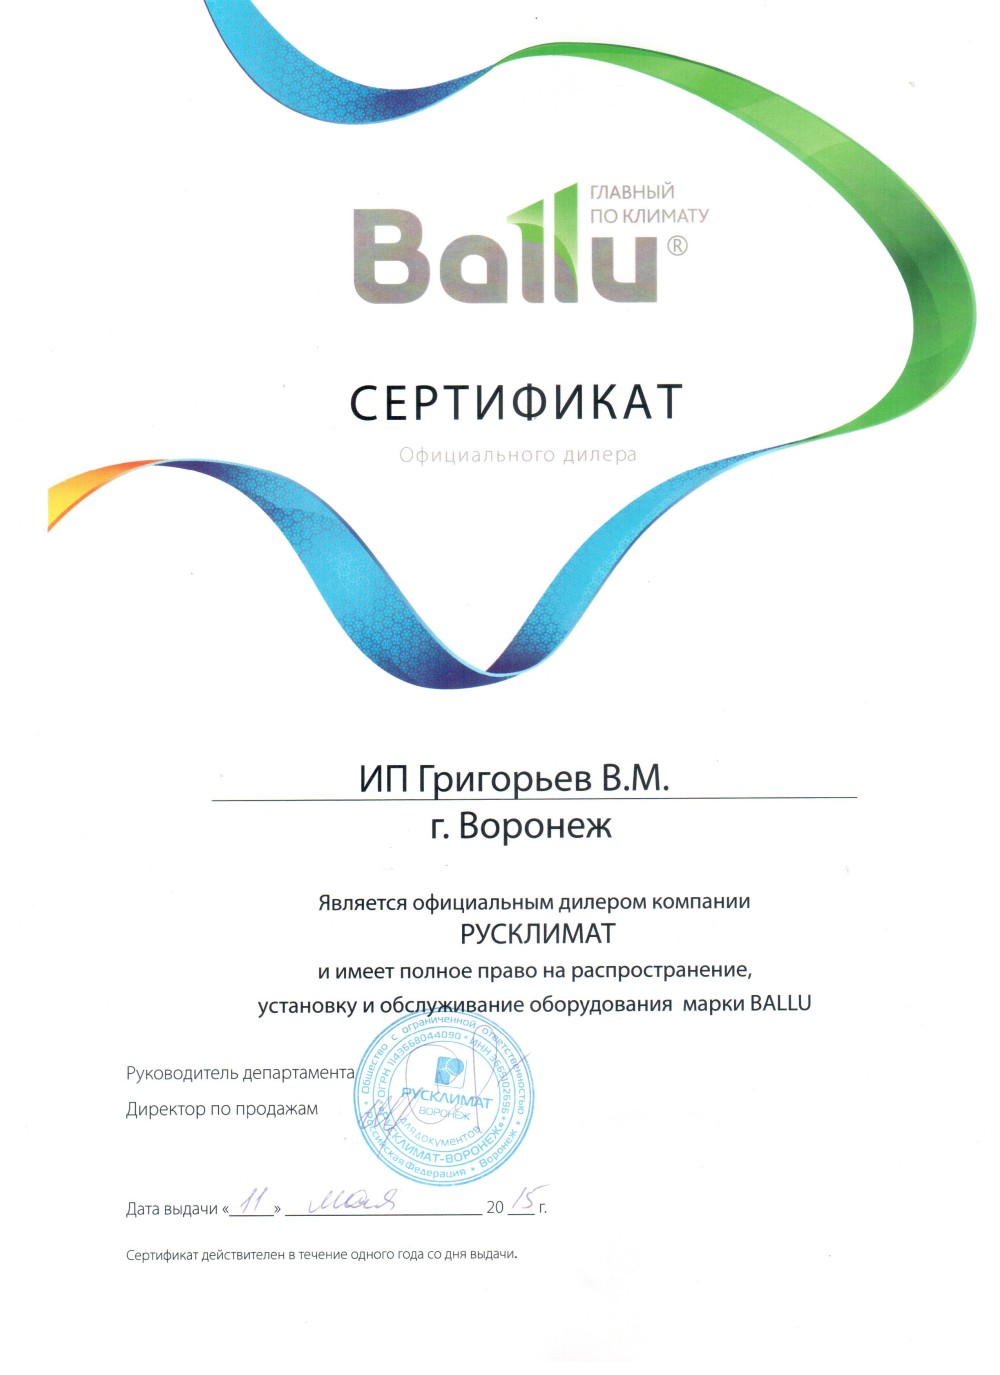 Нажмите на изображение, чтобы посмотреть сертификат Ballu